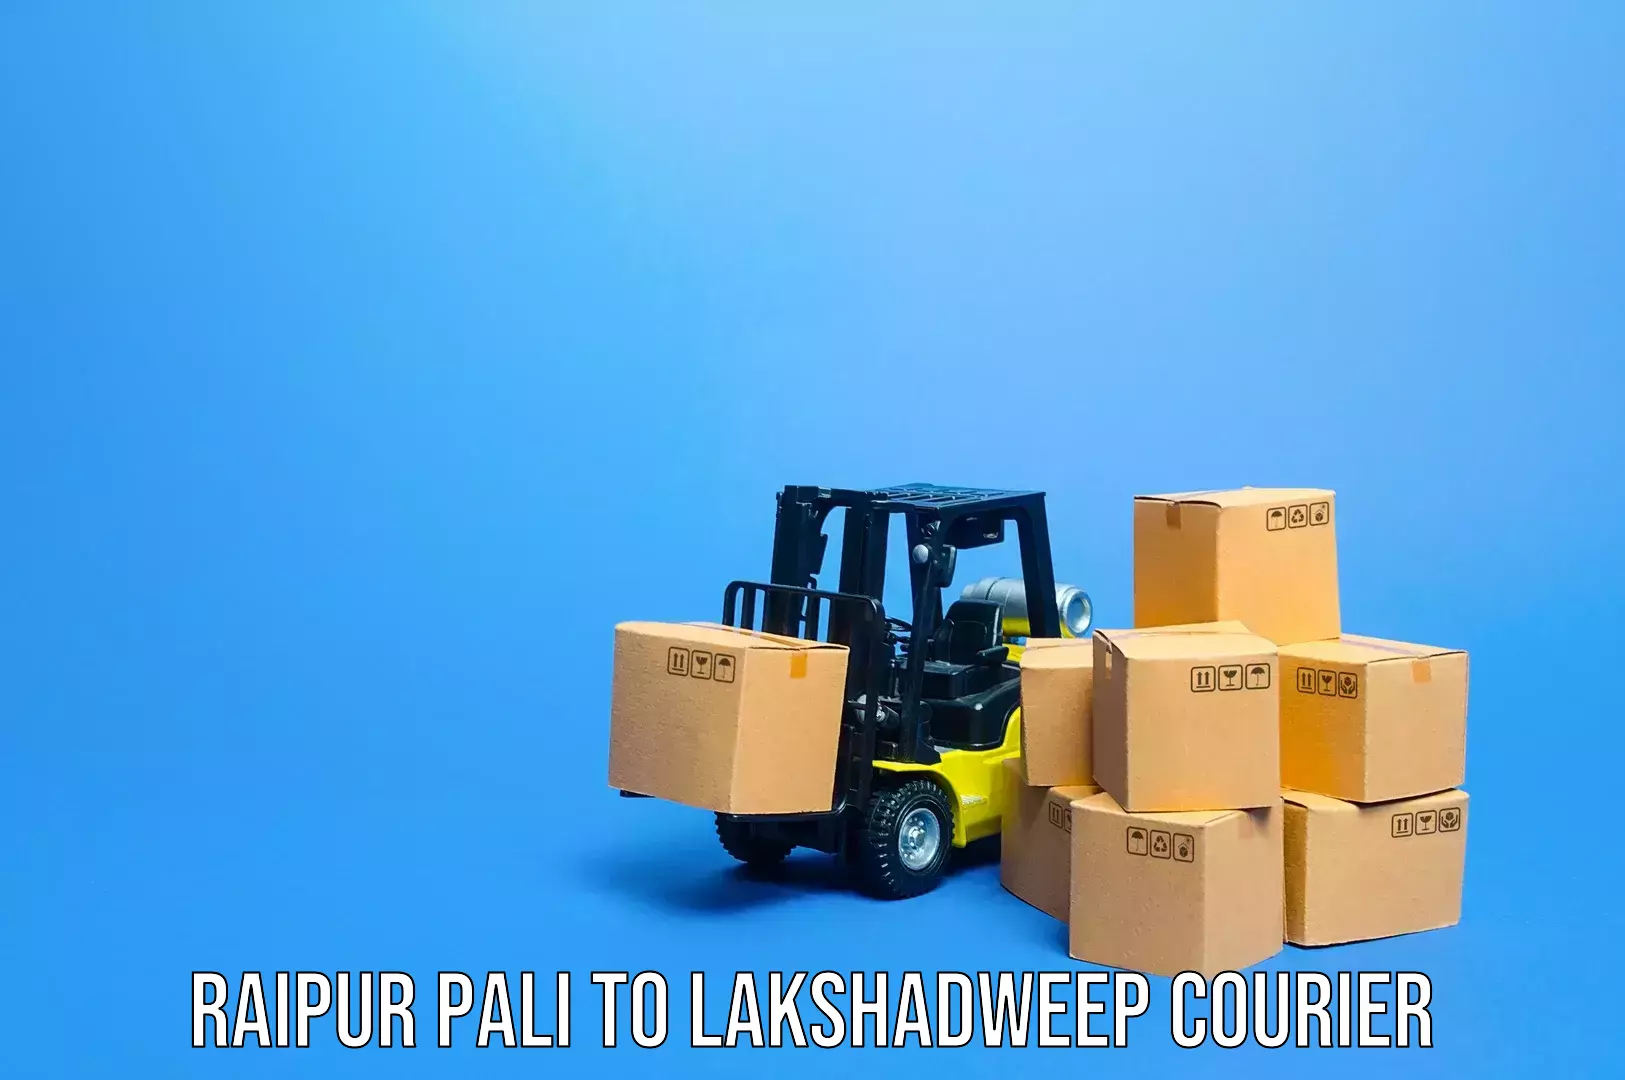 Emergency baggage service Raipur Pali to Lakshadweep